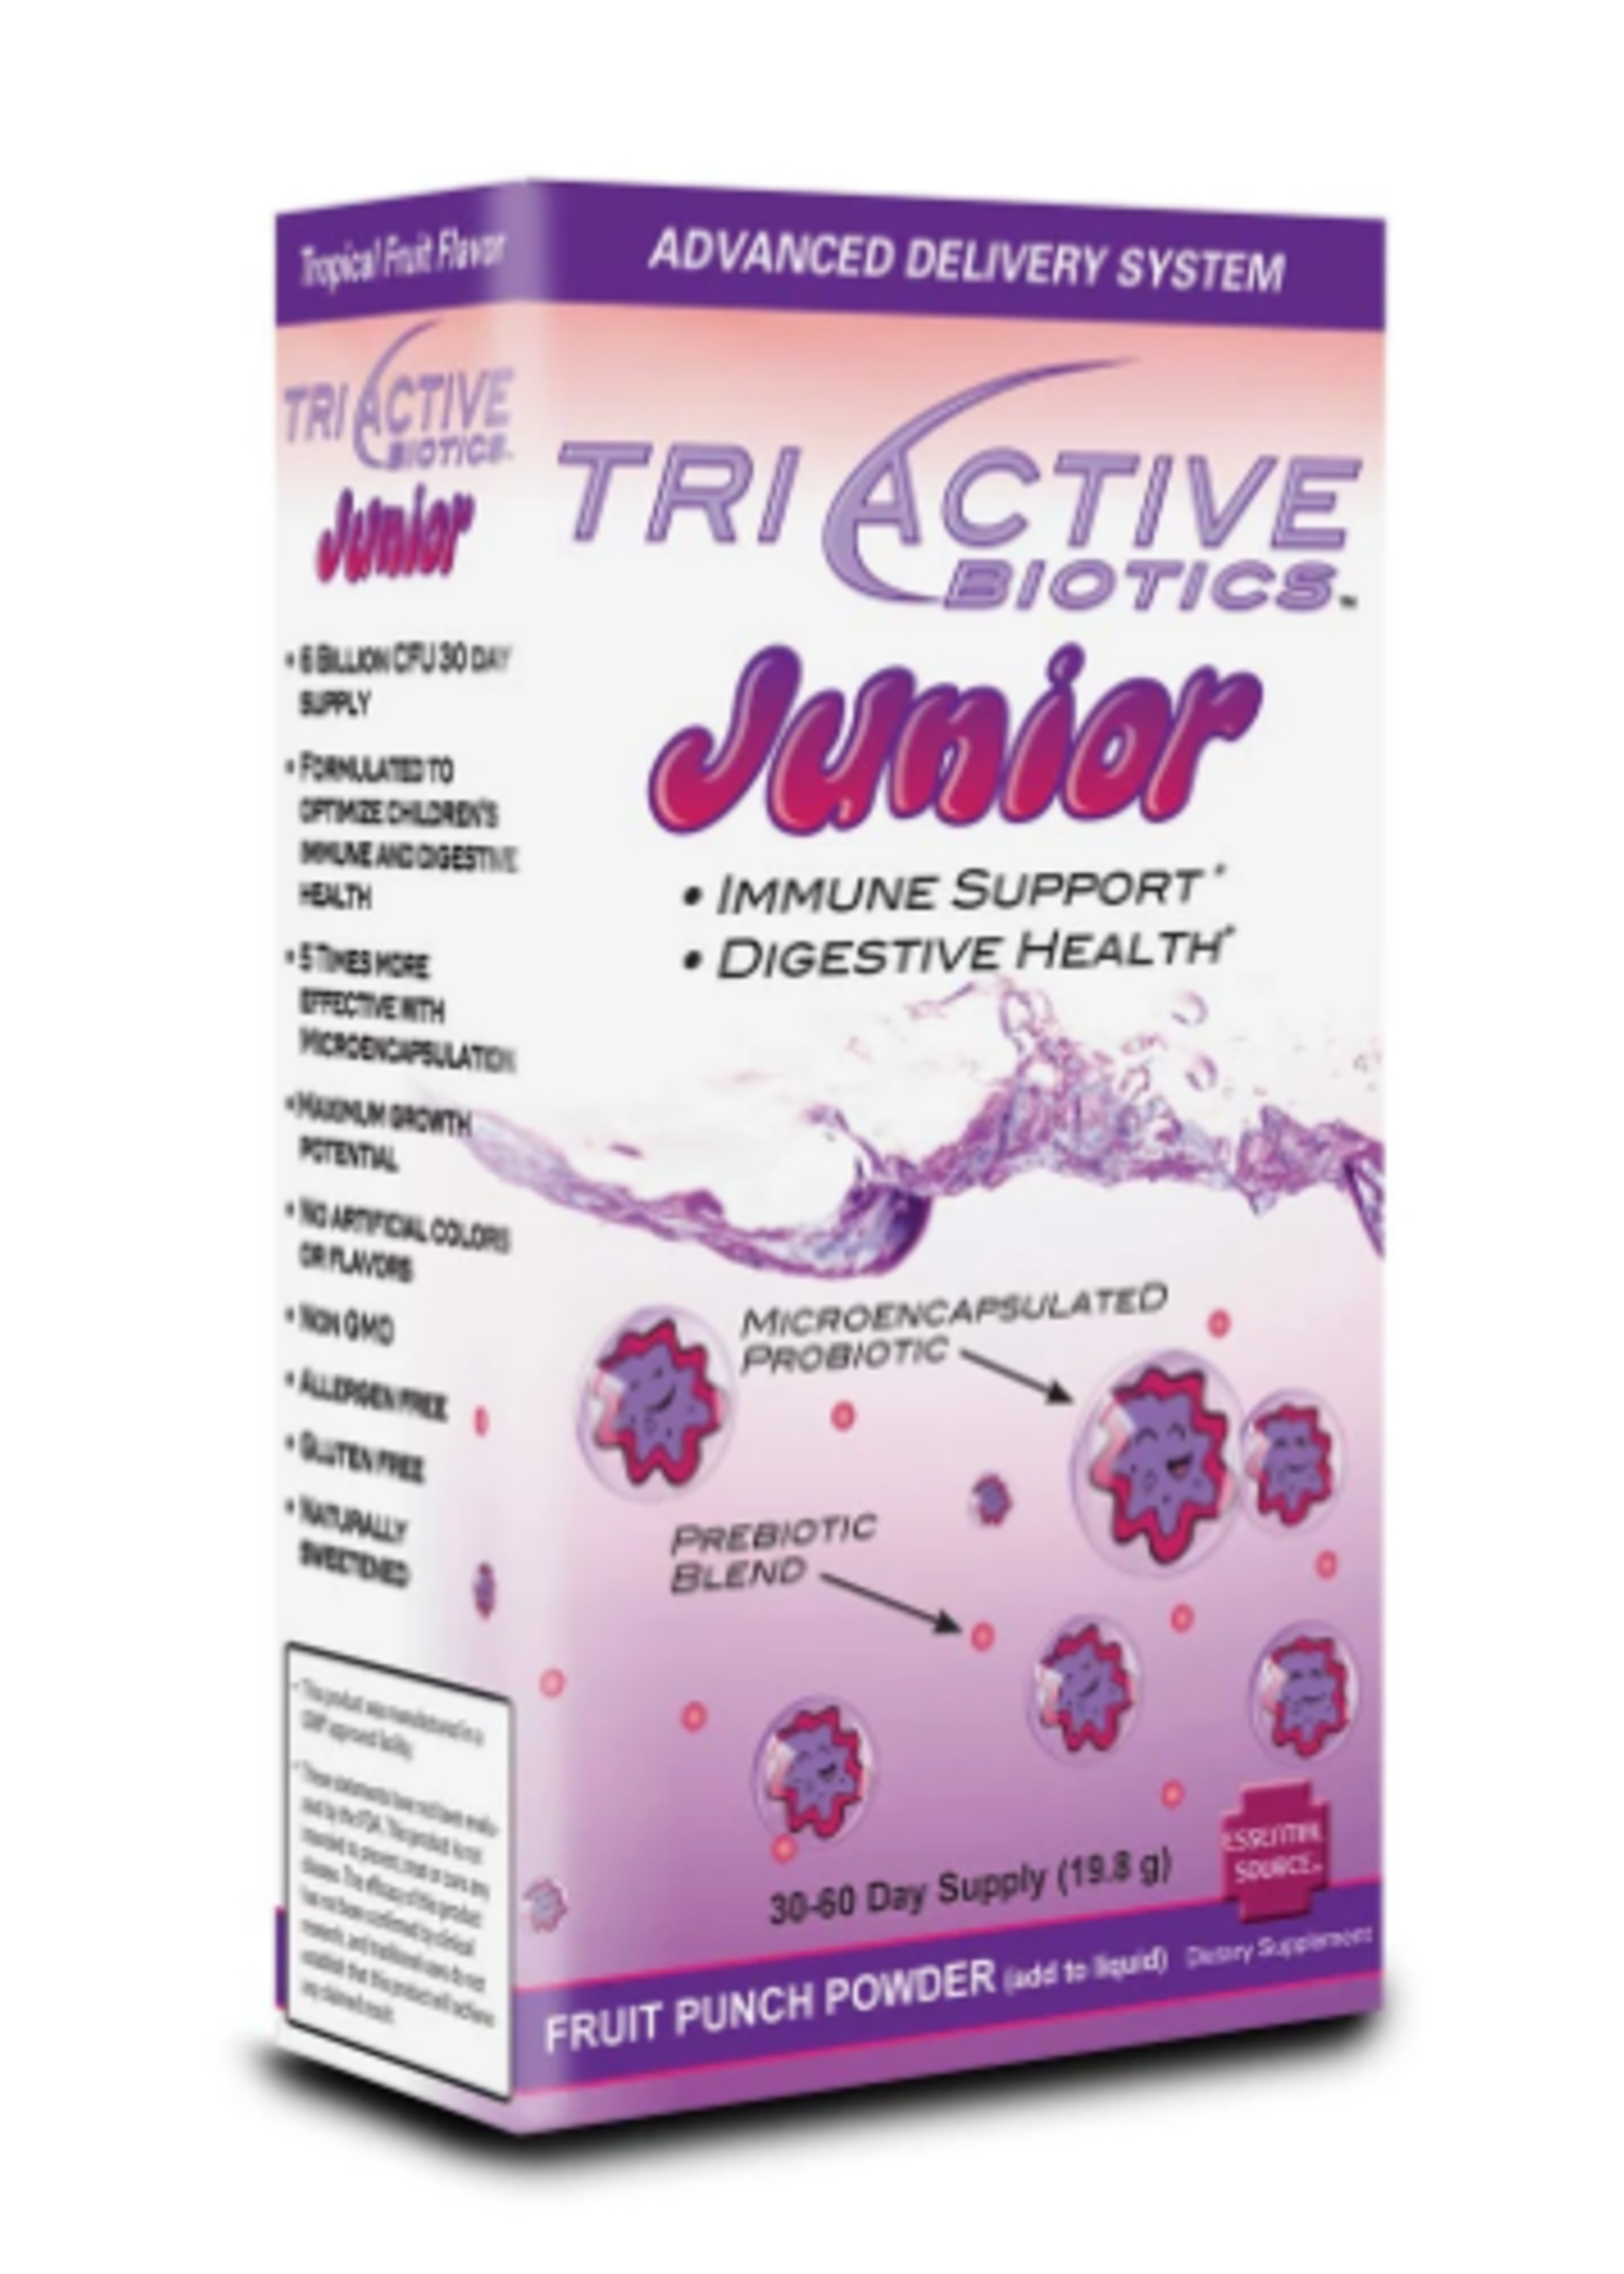 Triactive Biotics Juniors